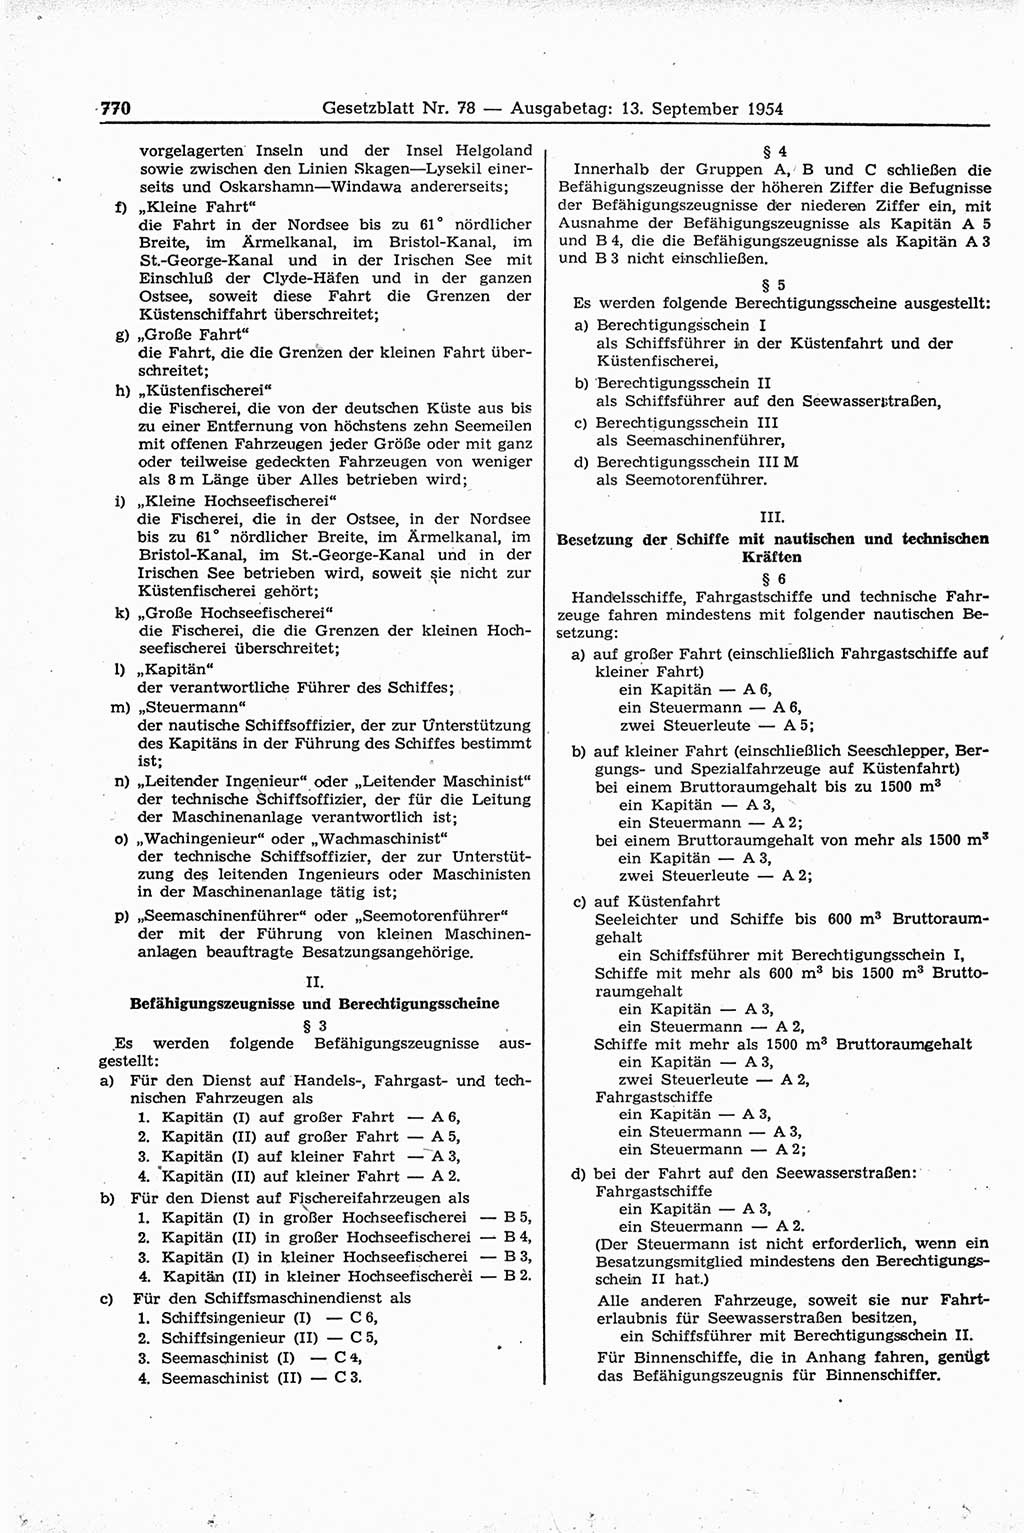 Gesetzblatt (GBl.) der Deutschen Demokratischen Republik (DDR) 1954, Seite 770 (GBl. DDR 1954, S. 770)